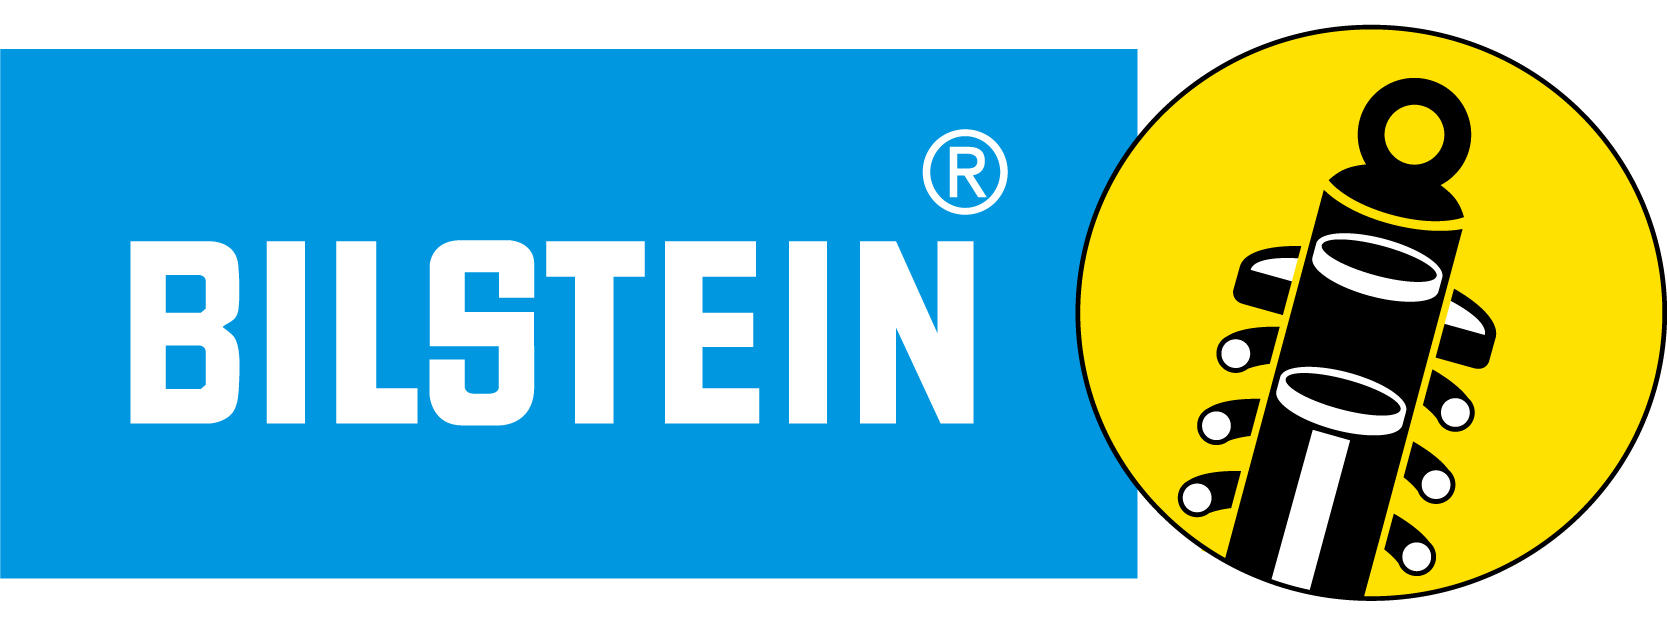 Bilstein_Logo.png